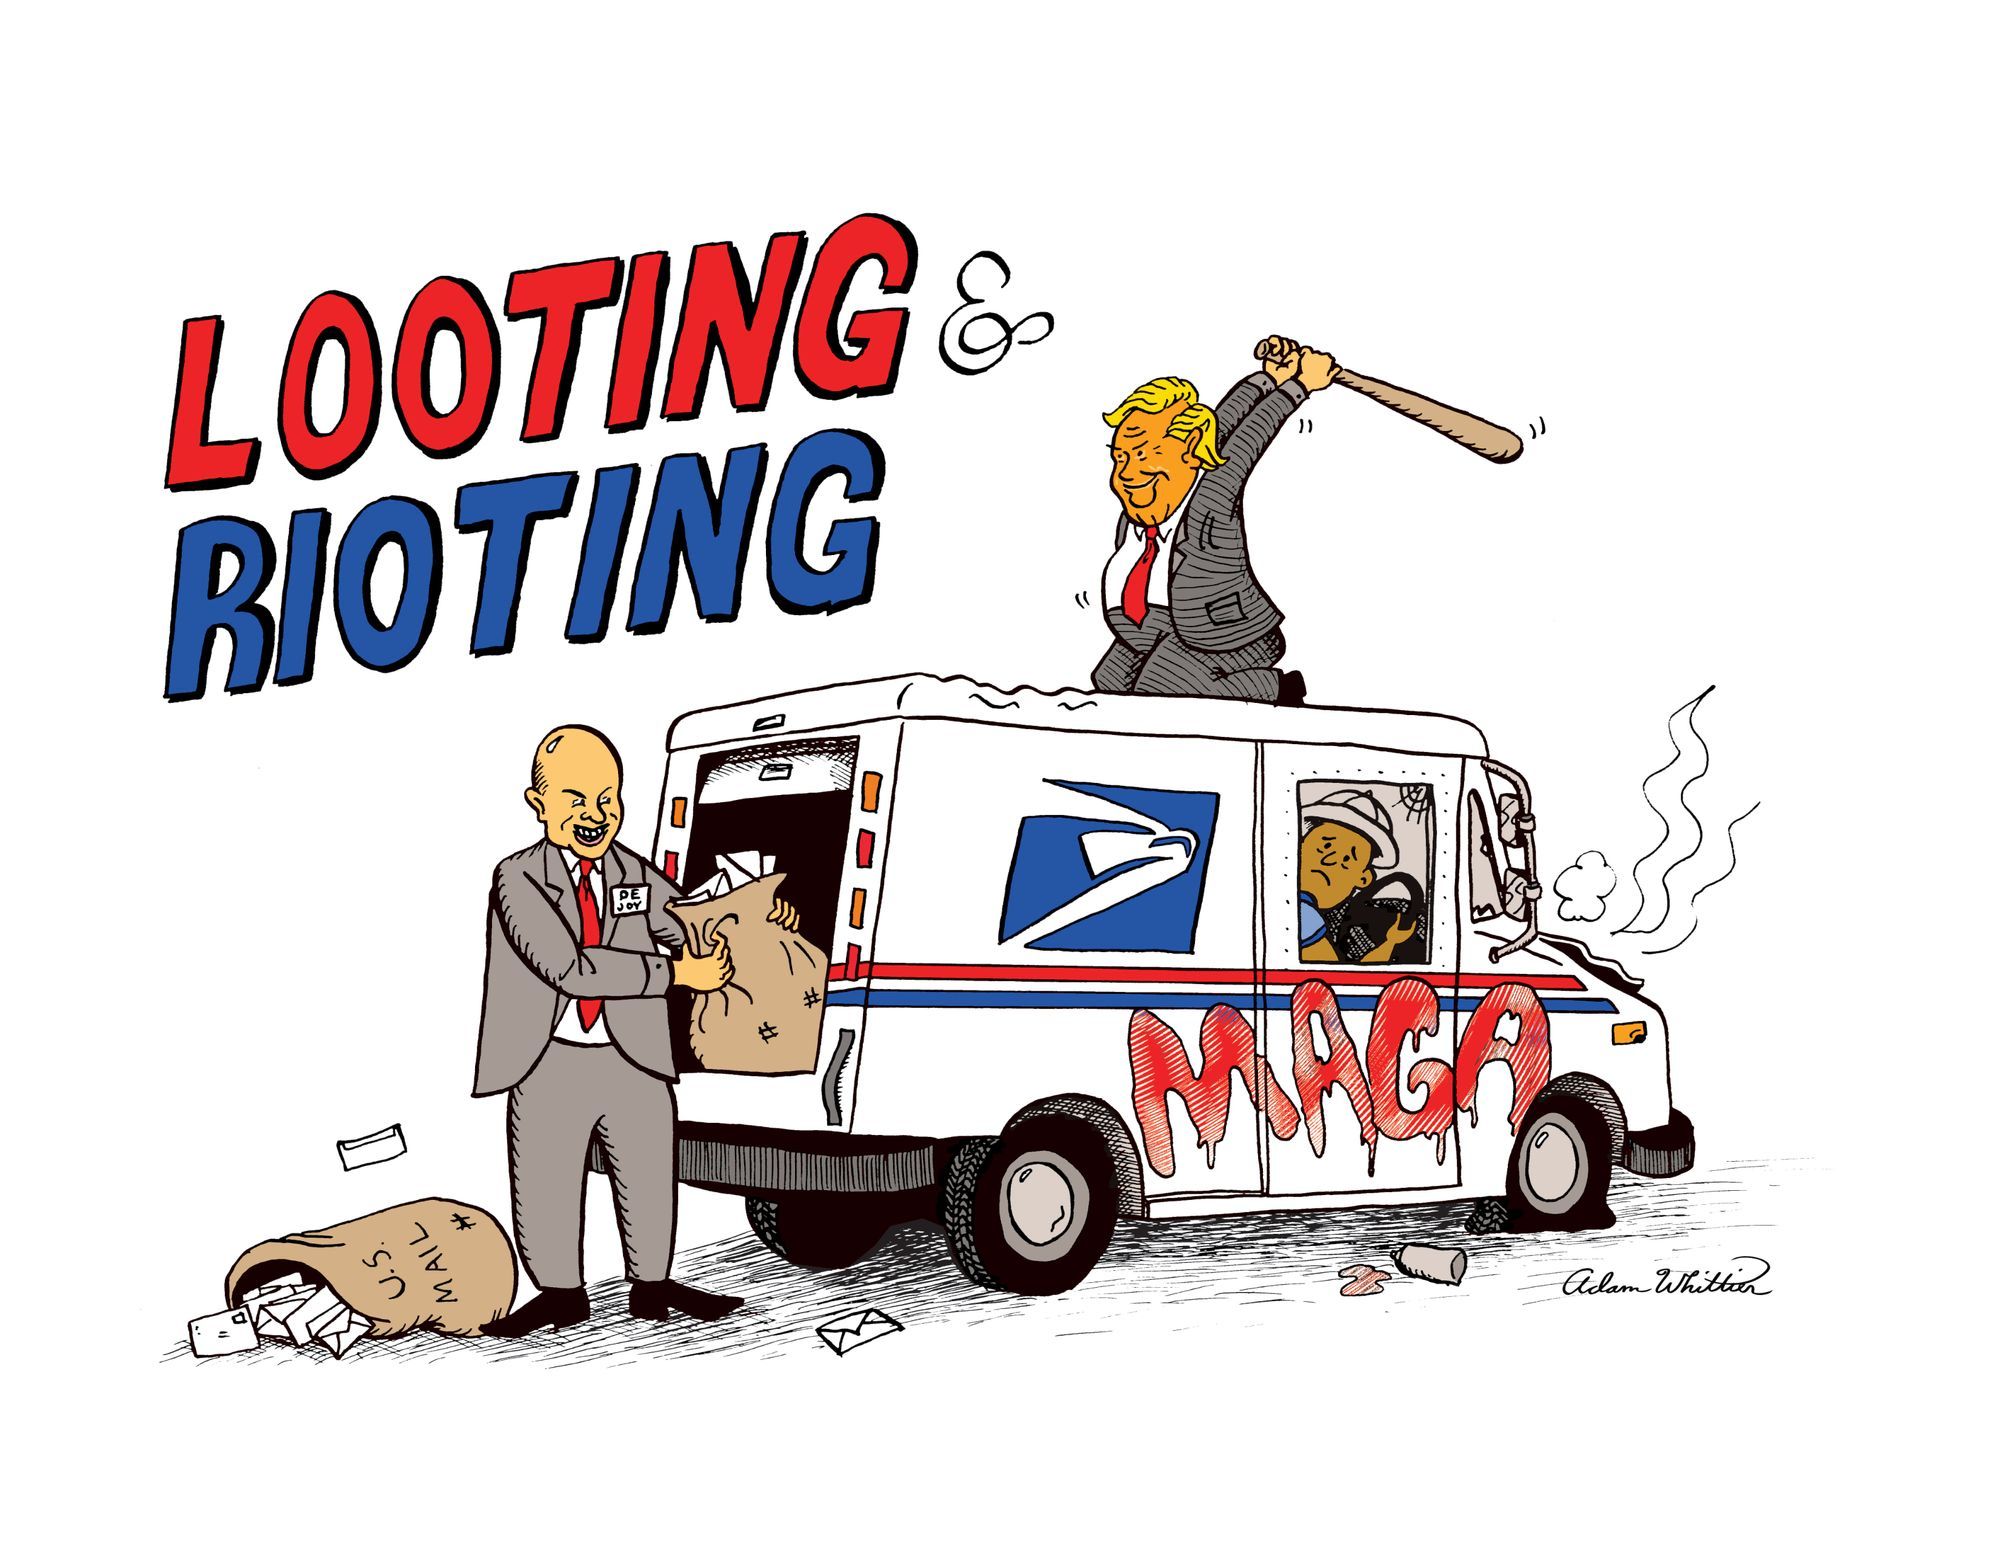 Looting & Rioting